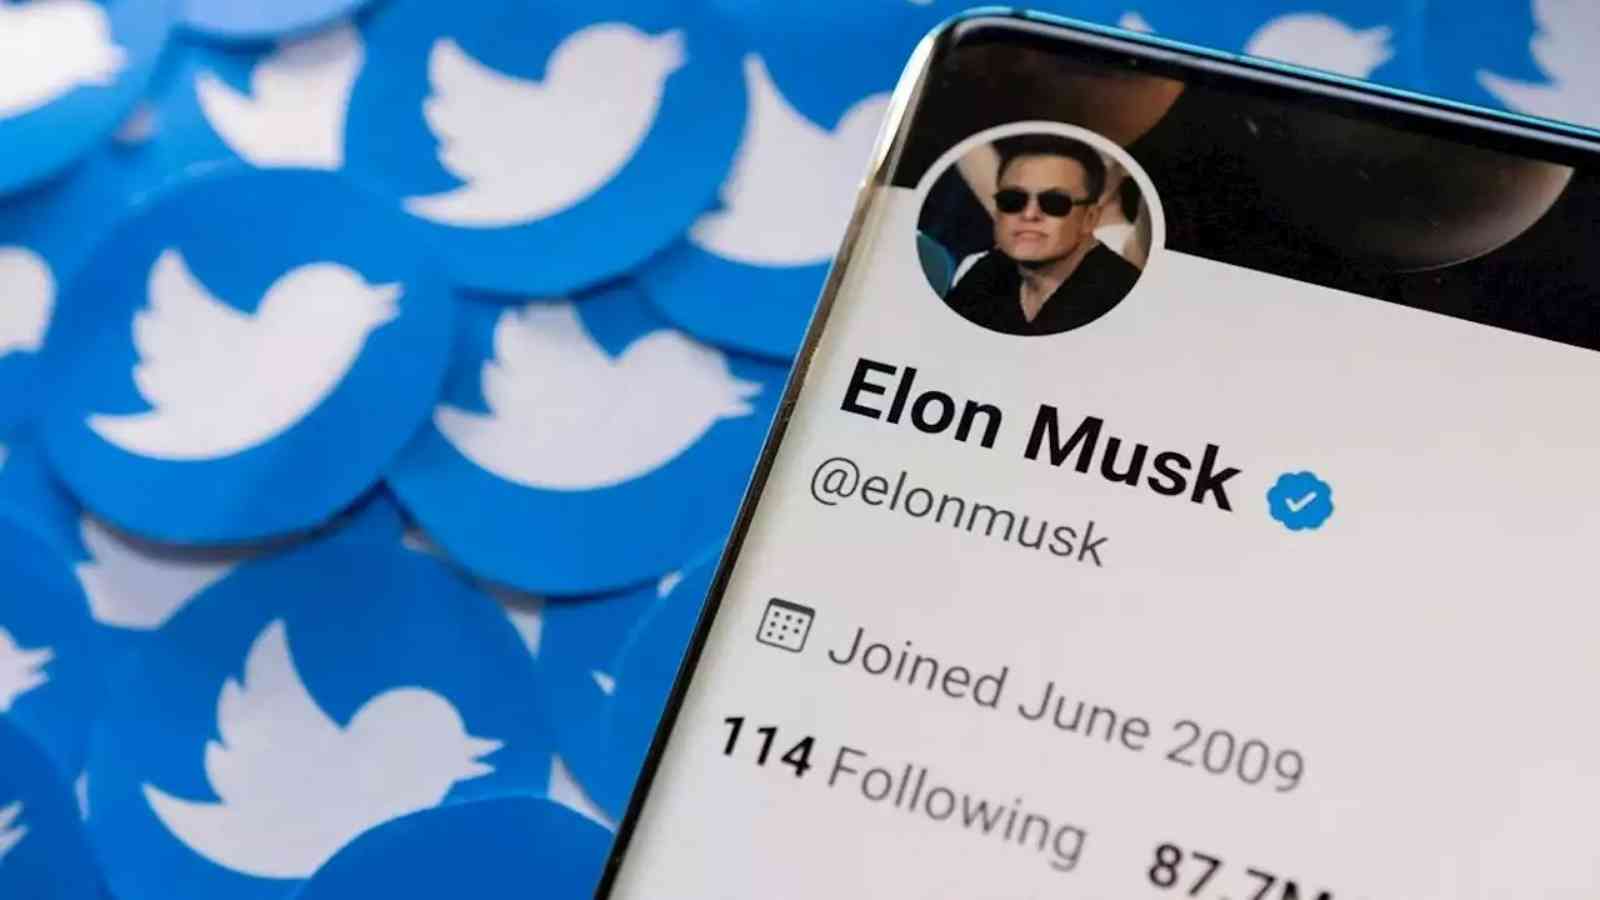 Elon Musk's $44 Billion Twitter Deal Receives Boards Endorsement